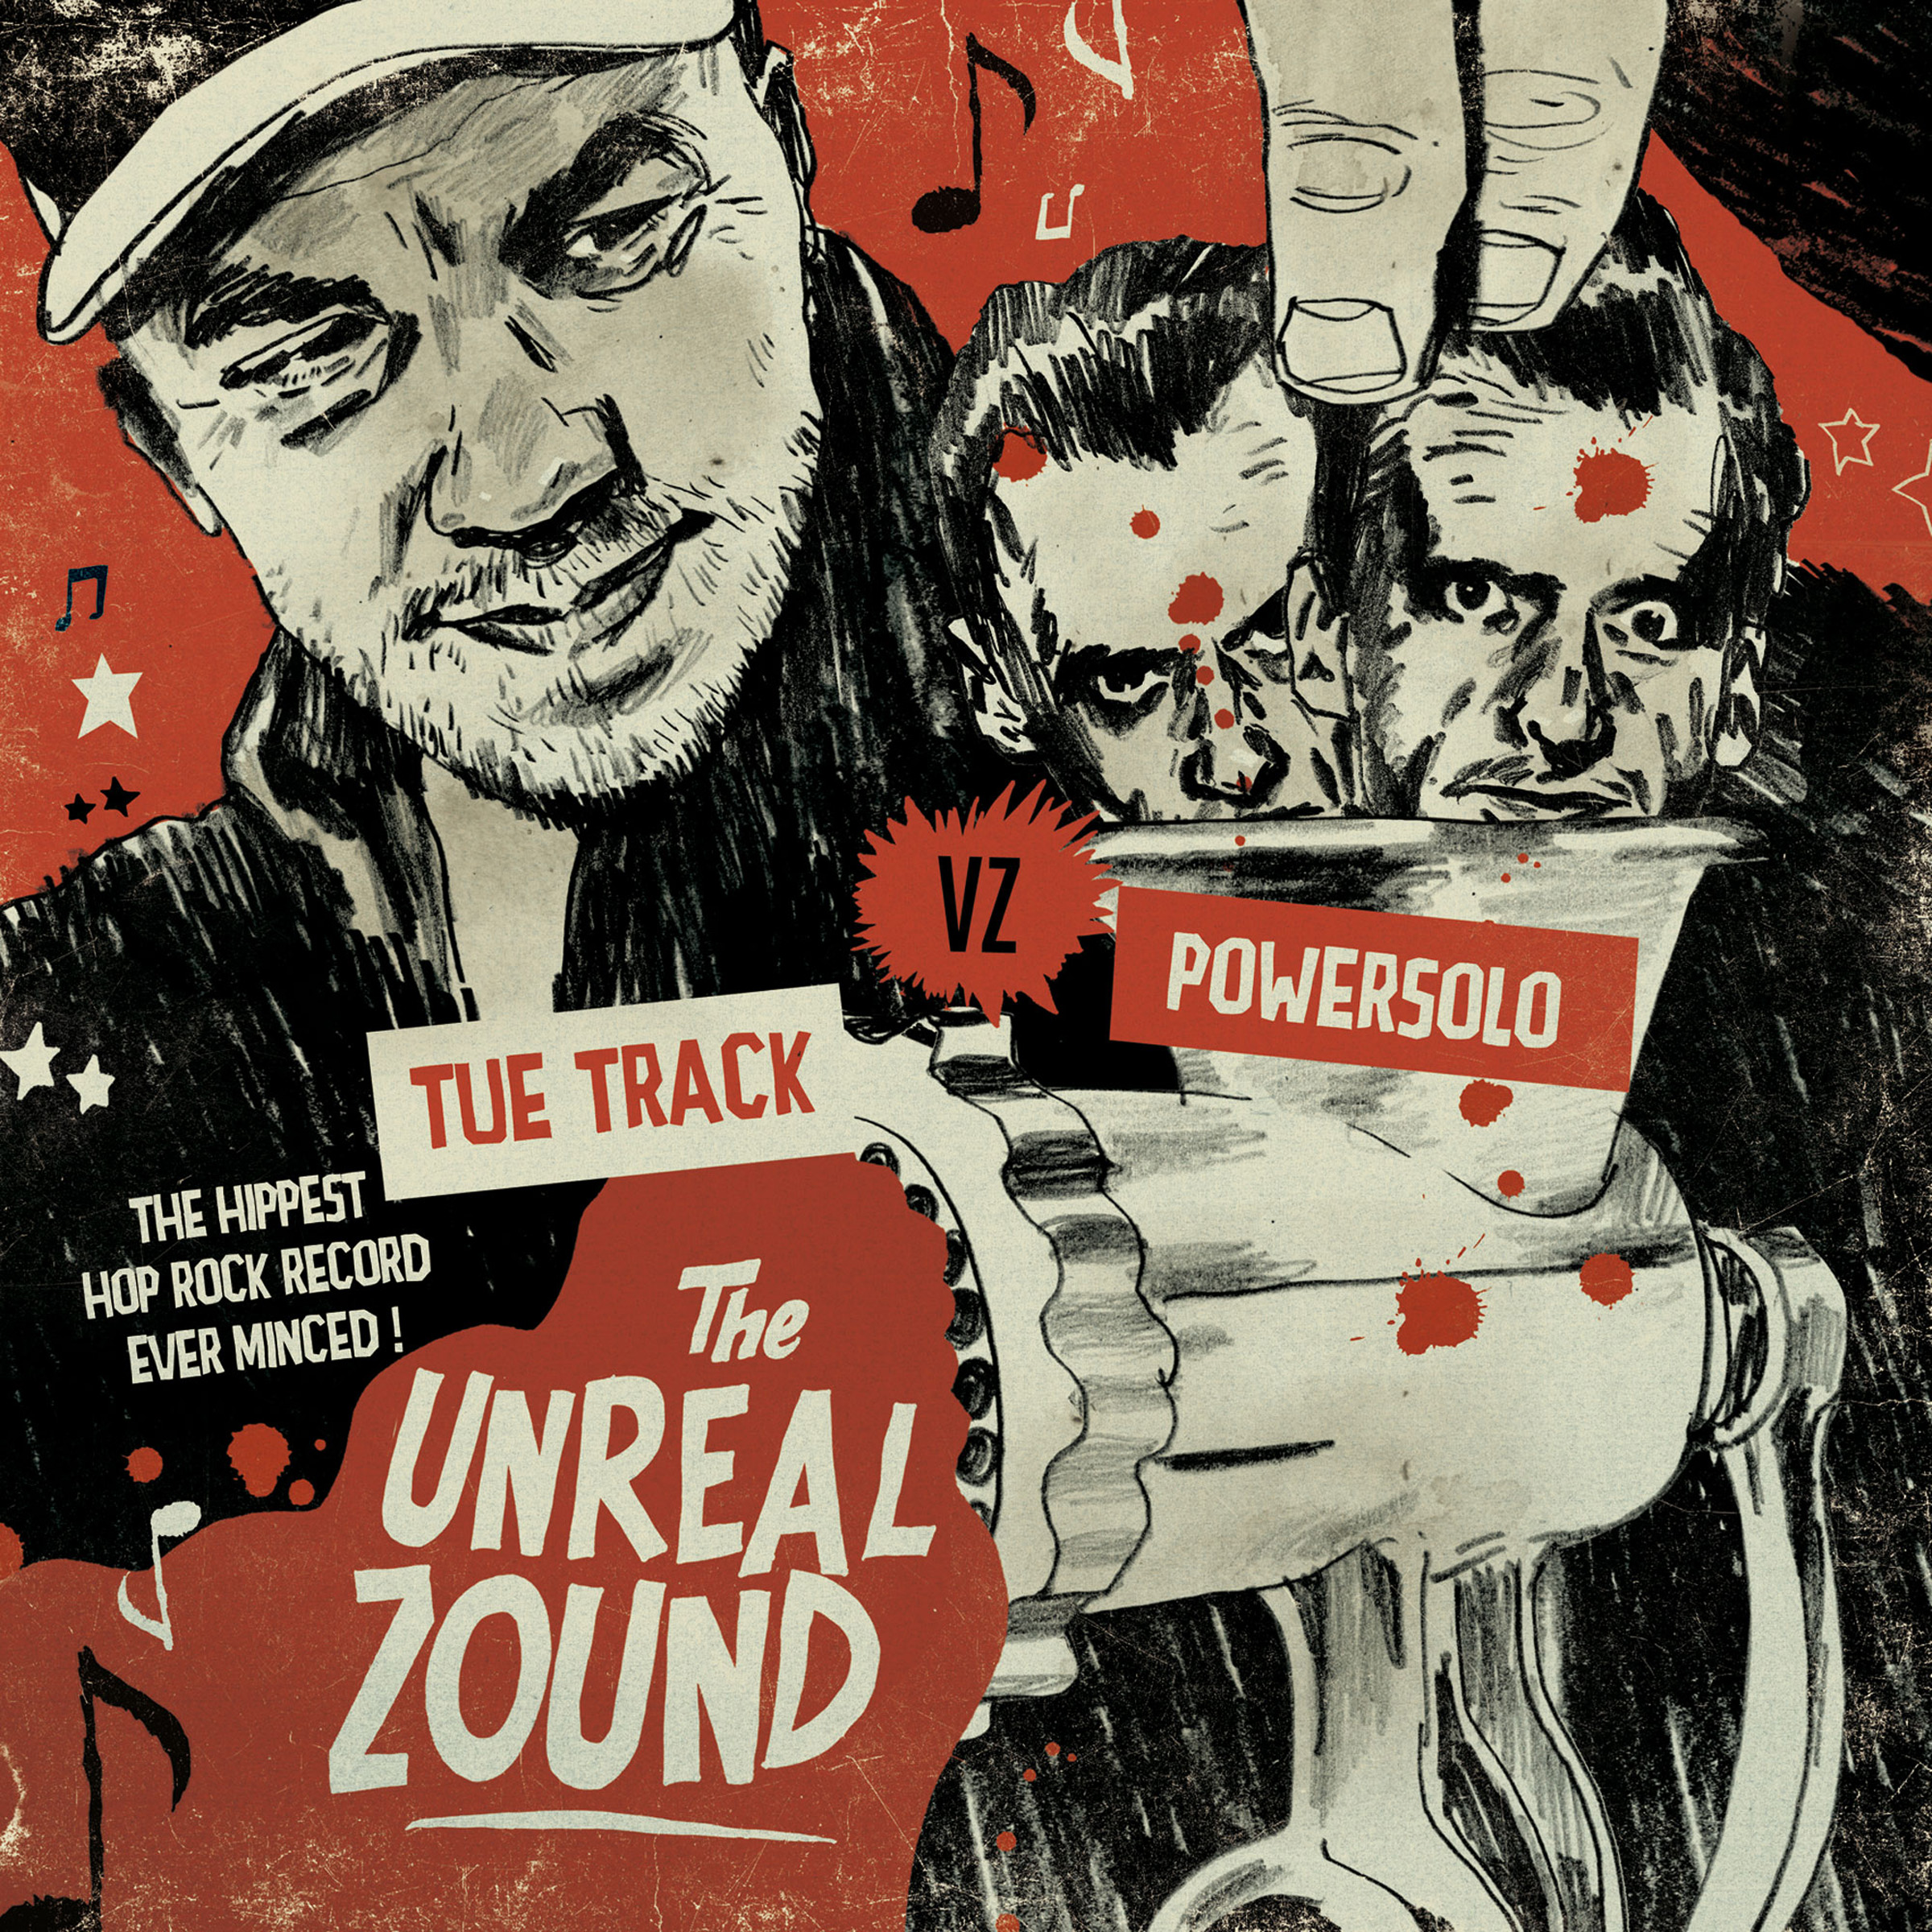 Tue Track vz PowerSolo - The Unreal Zound - CD